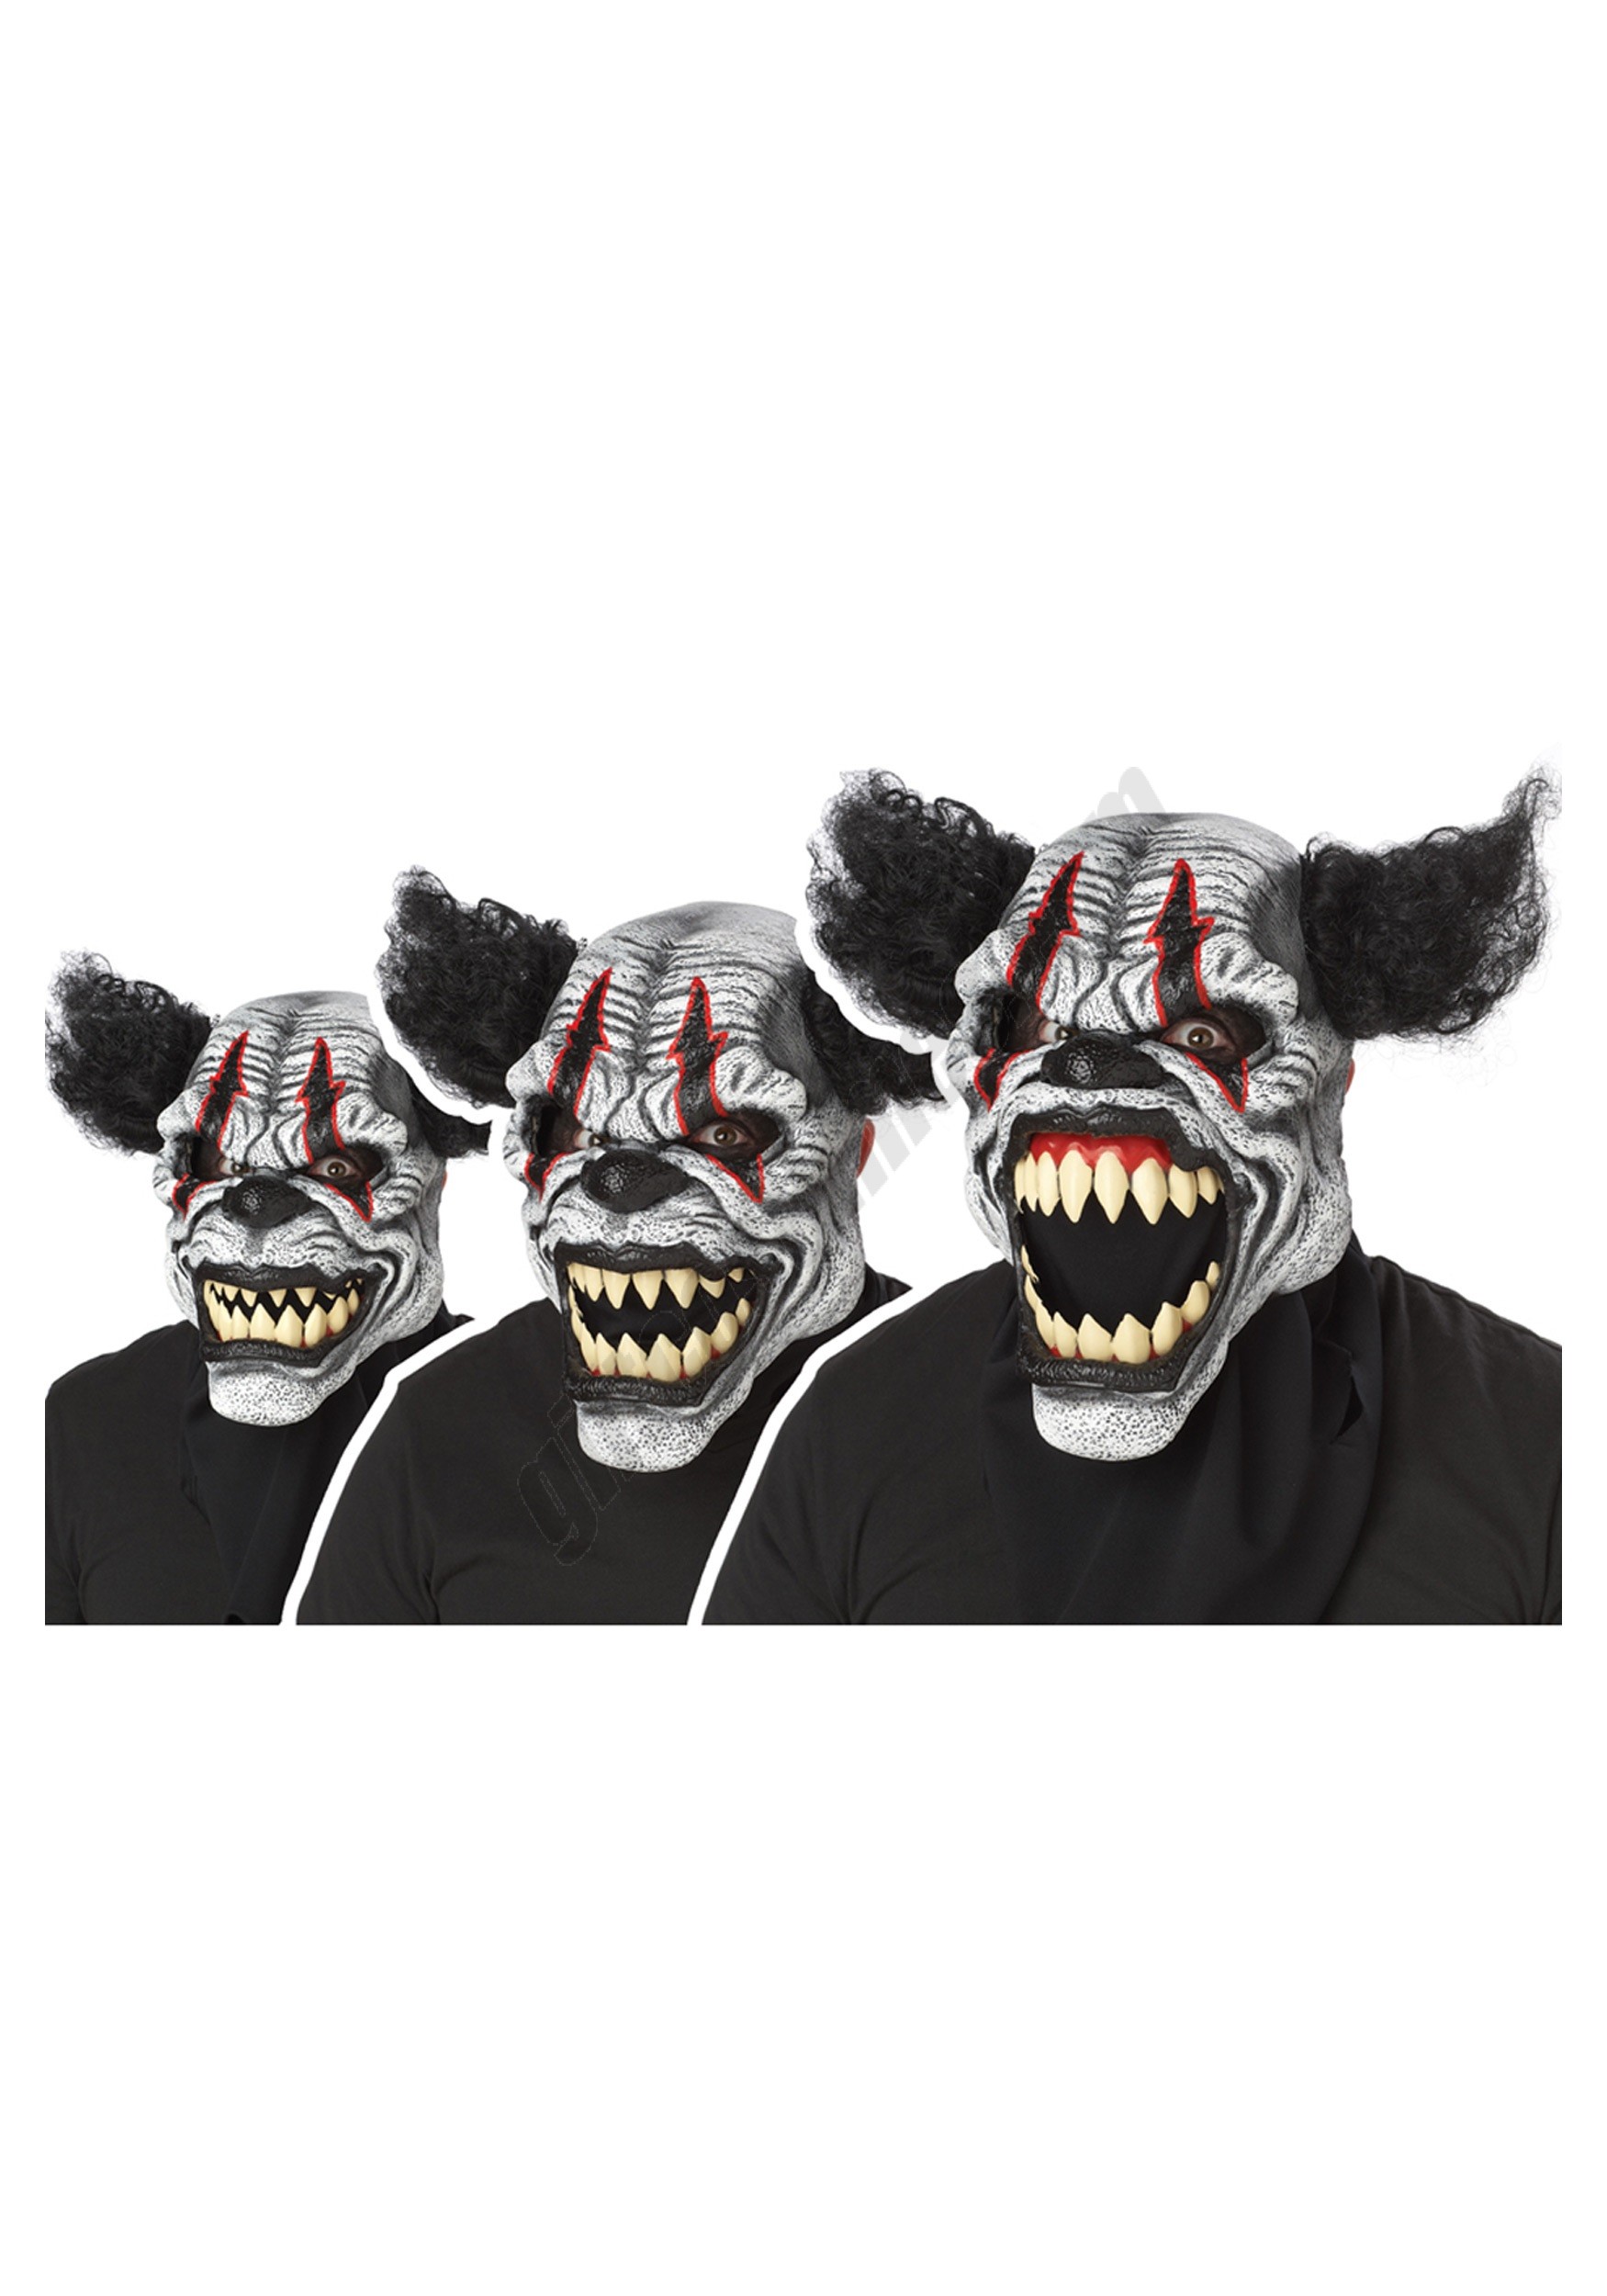 Last Laugh Clown Mask Promotions - Last Laugh Clown Mask Promotions